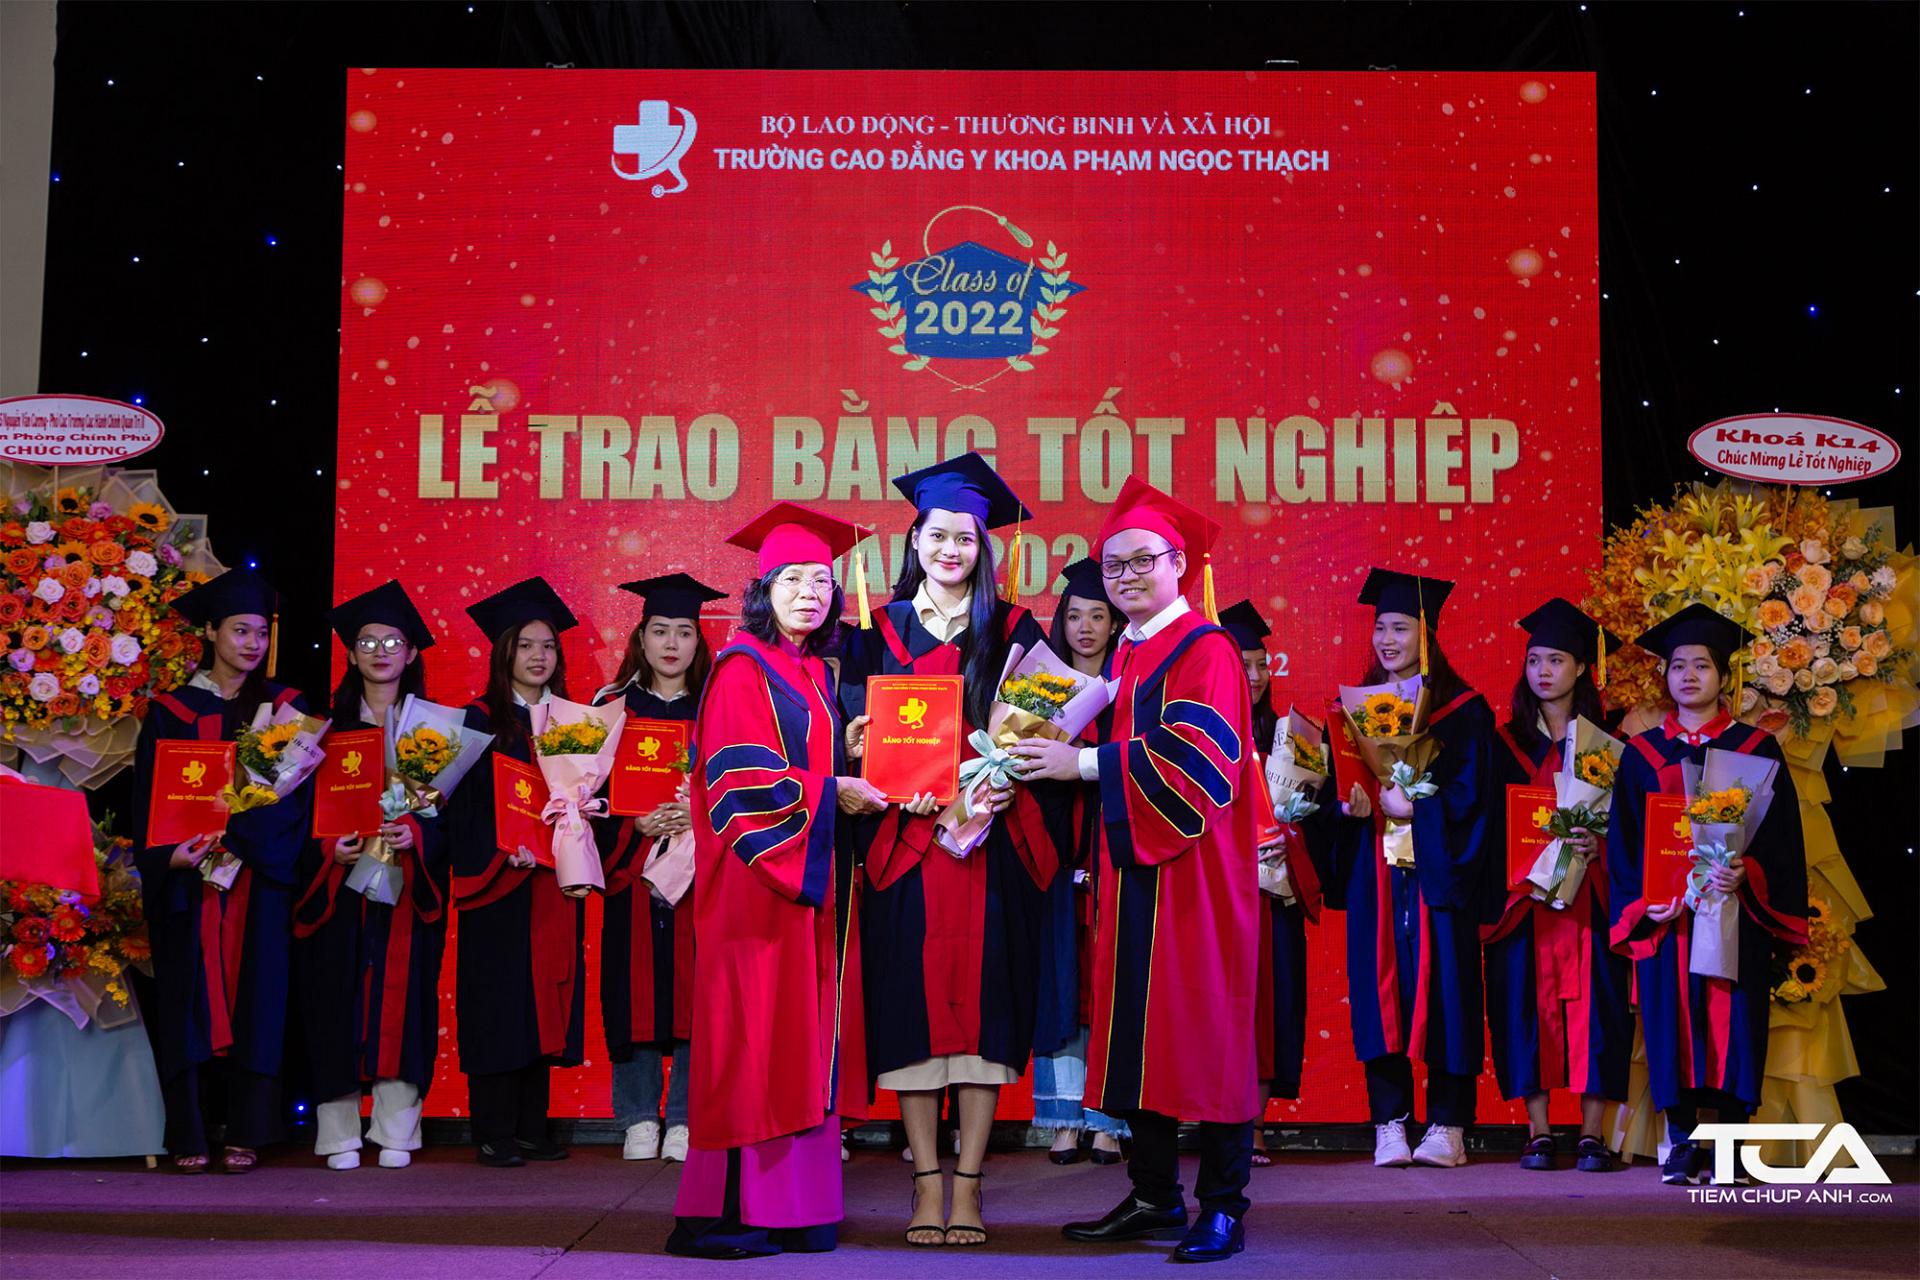 Hiệu trưởng Trường Cao đẳng Y khoa Phạm Ngọc Thạch trao bằng tốt nghiệp cho sinh viên